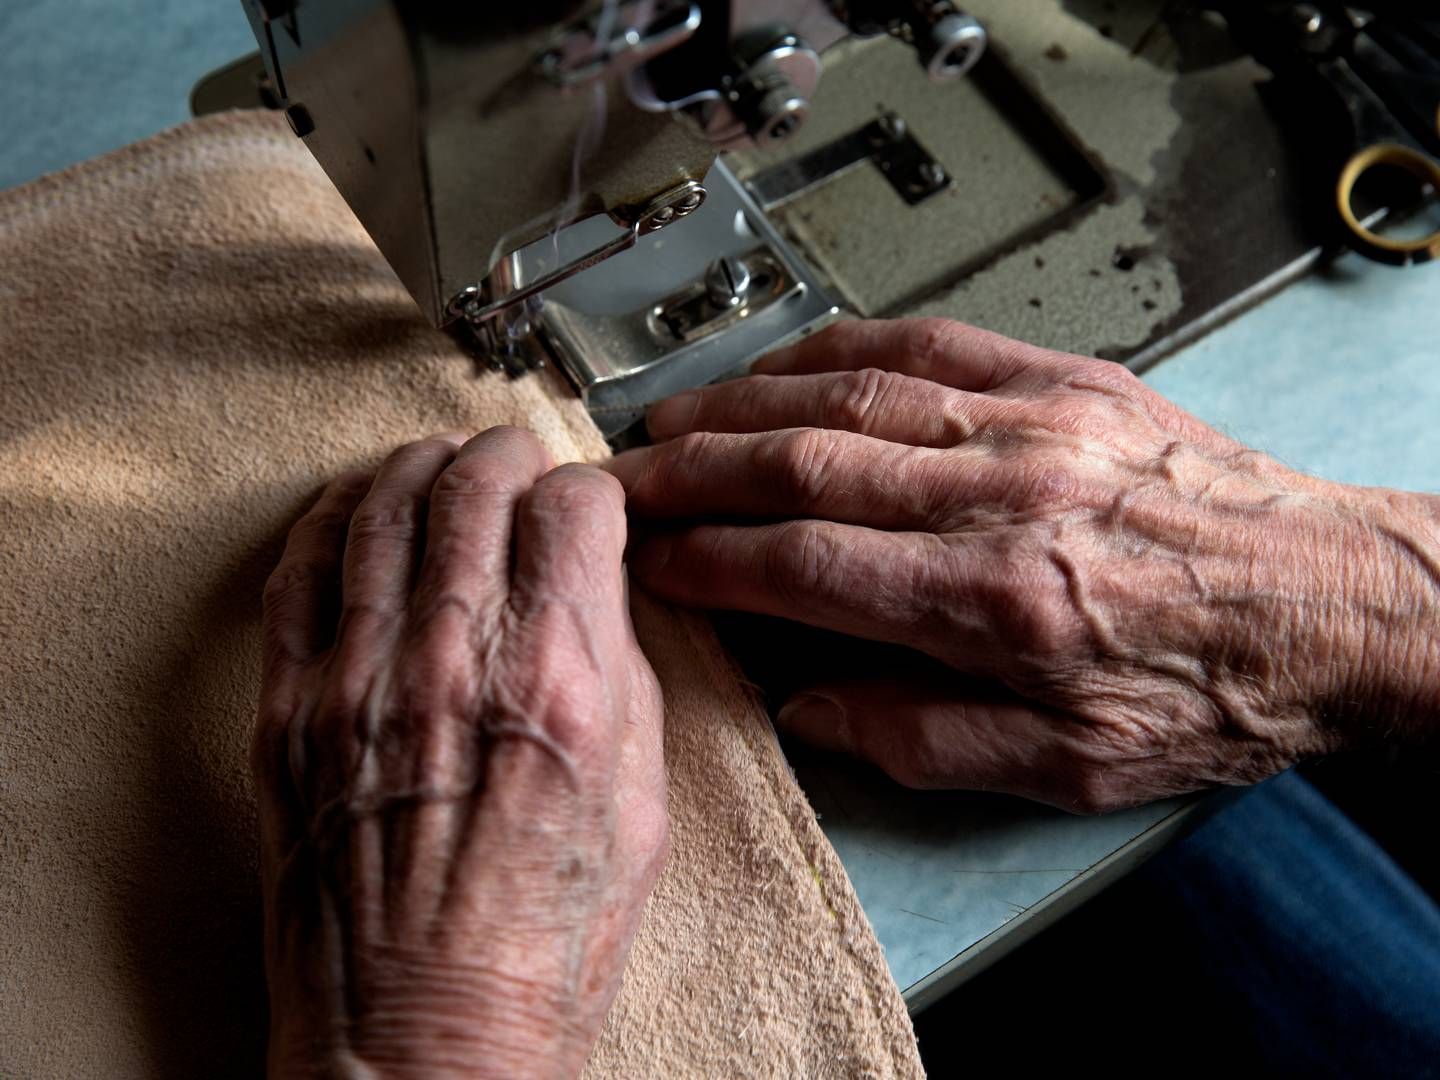 Flere ældre arbejder efter de har rundet folkepensionsalderen, viser nye tal. | Foto: Jacob Ehrbahn